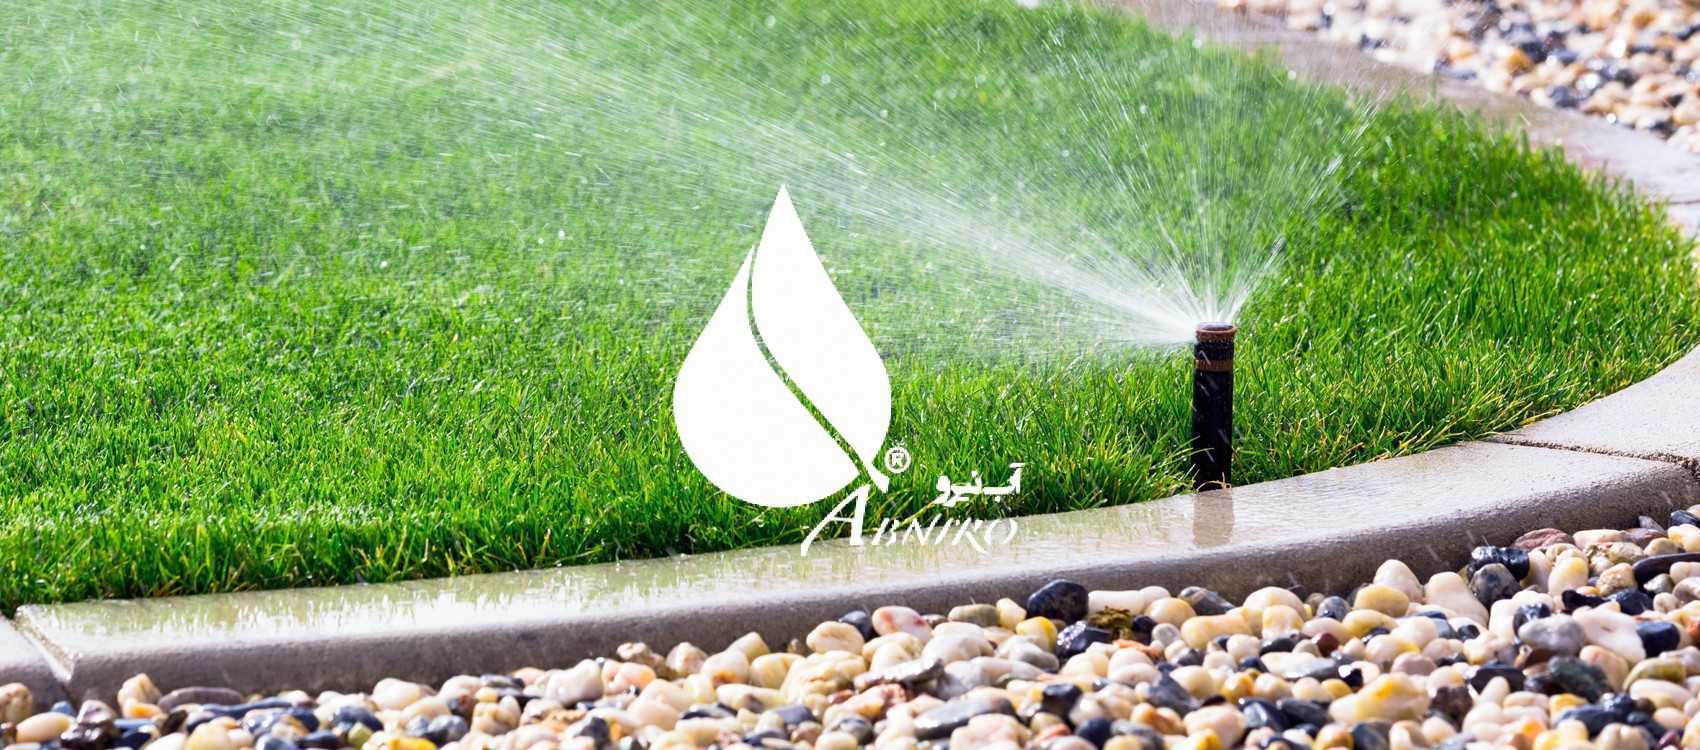 Sprinkler-irrigation-system